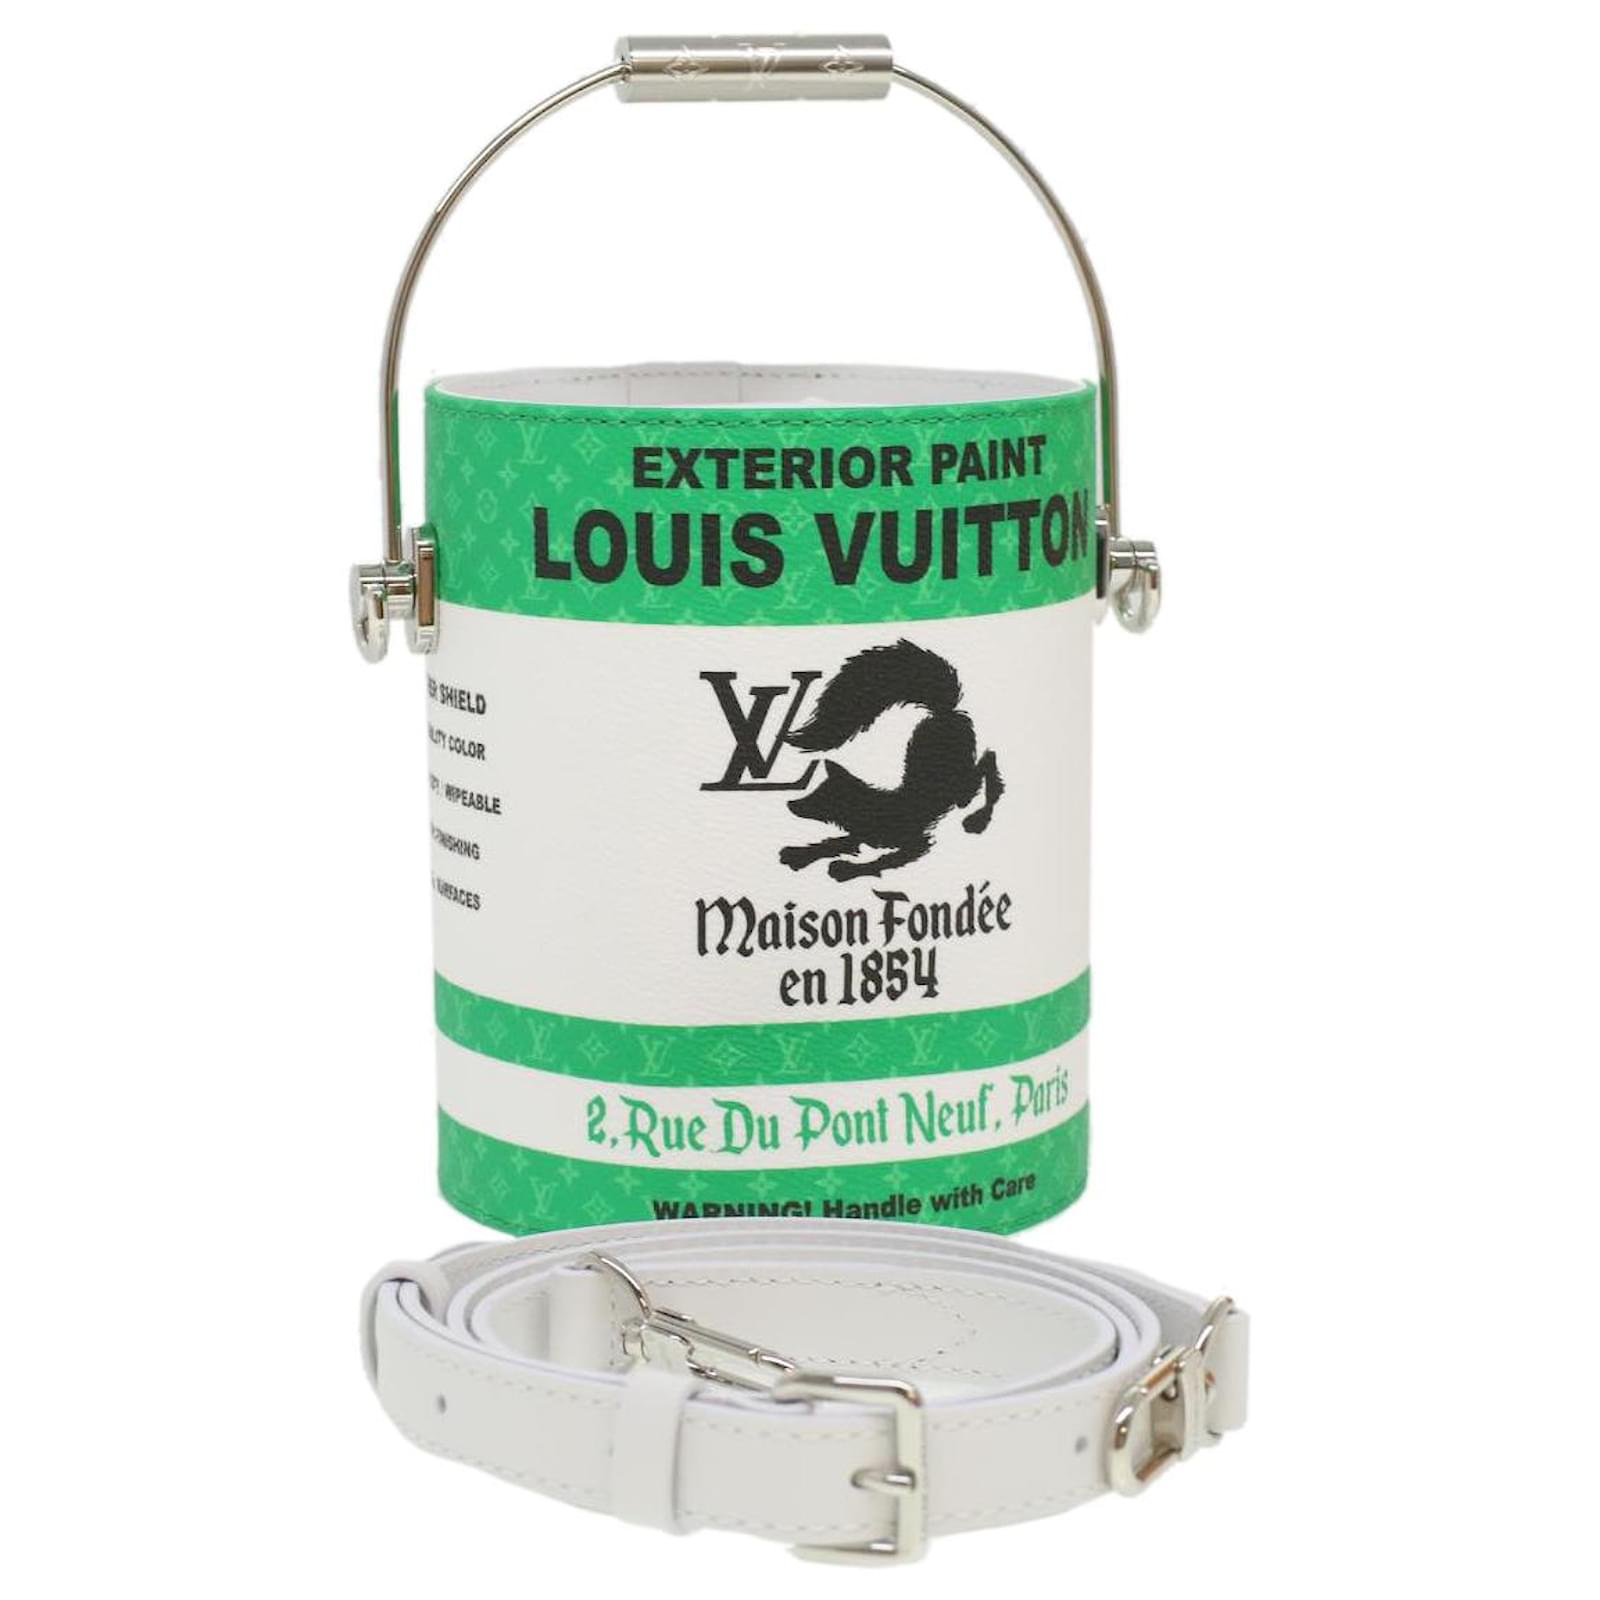 Handbags Louis Vuitton Louis Vuitton Monogram Reverse Hobo Dauphine PM Shoulder Bag M45194 Auth 27624a